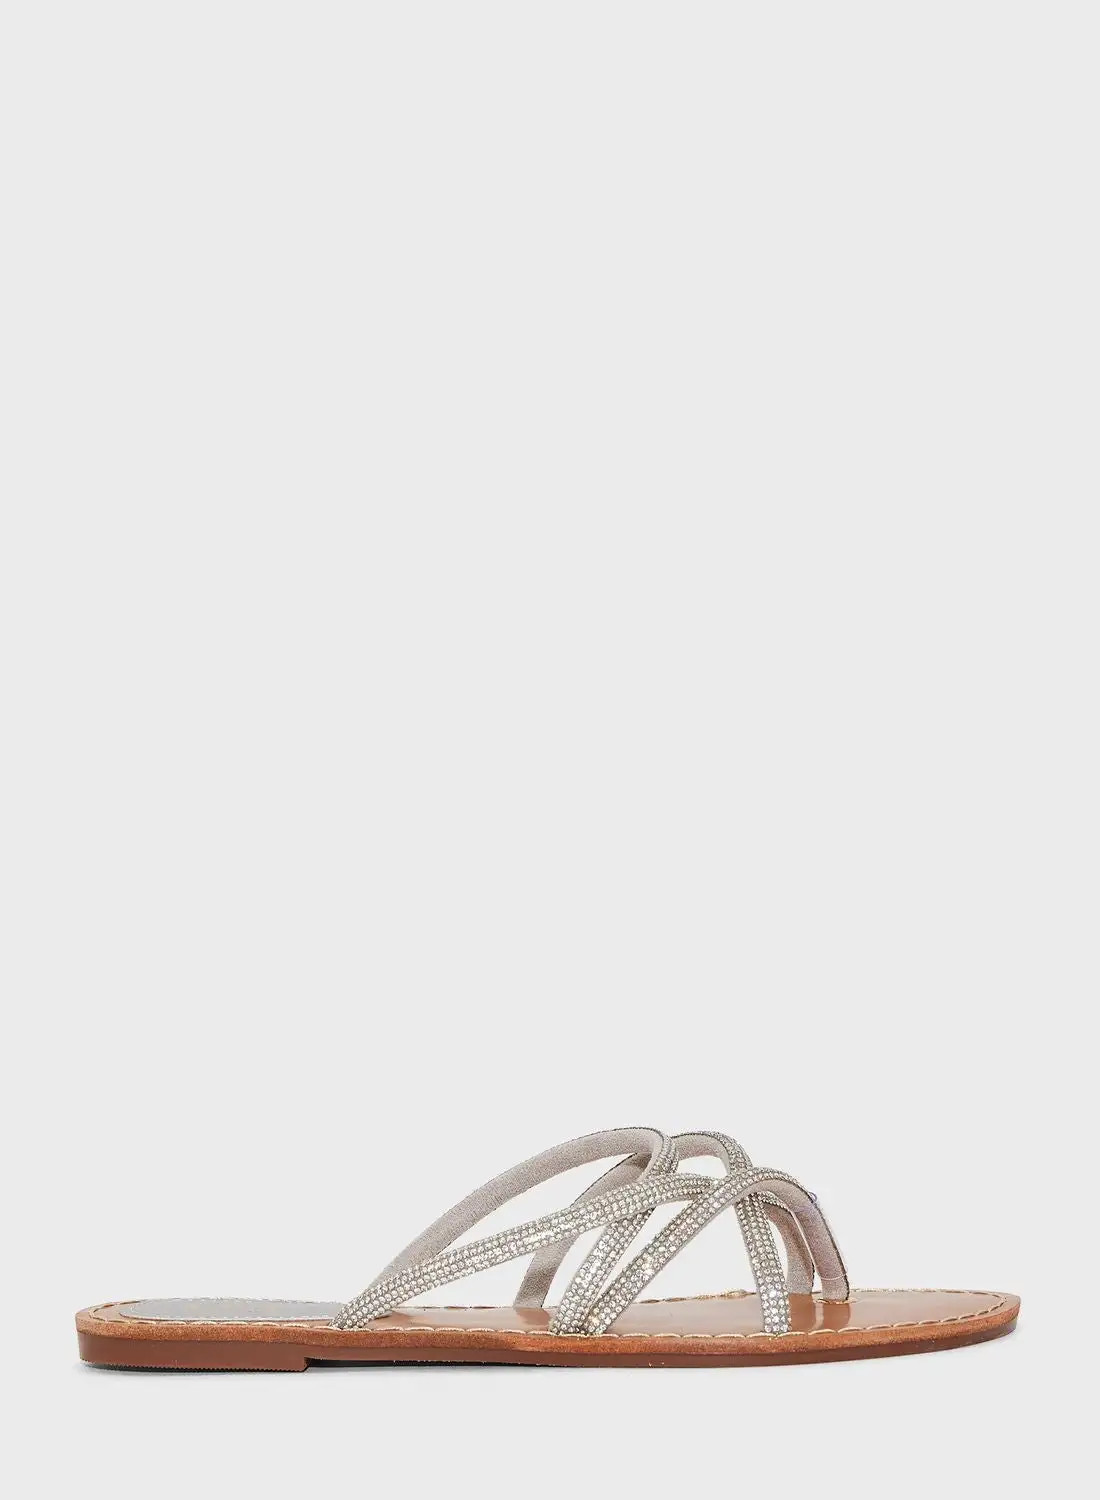 صندل مسطح بحزام ملتوي من Ella إصدار محدود من Diamante باللون الفضي